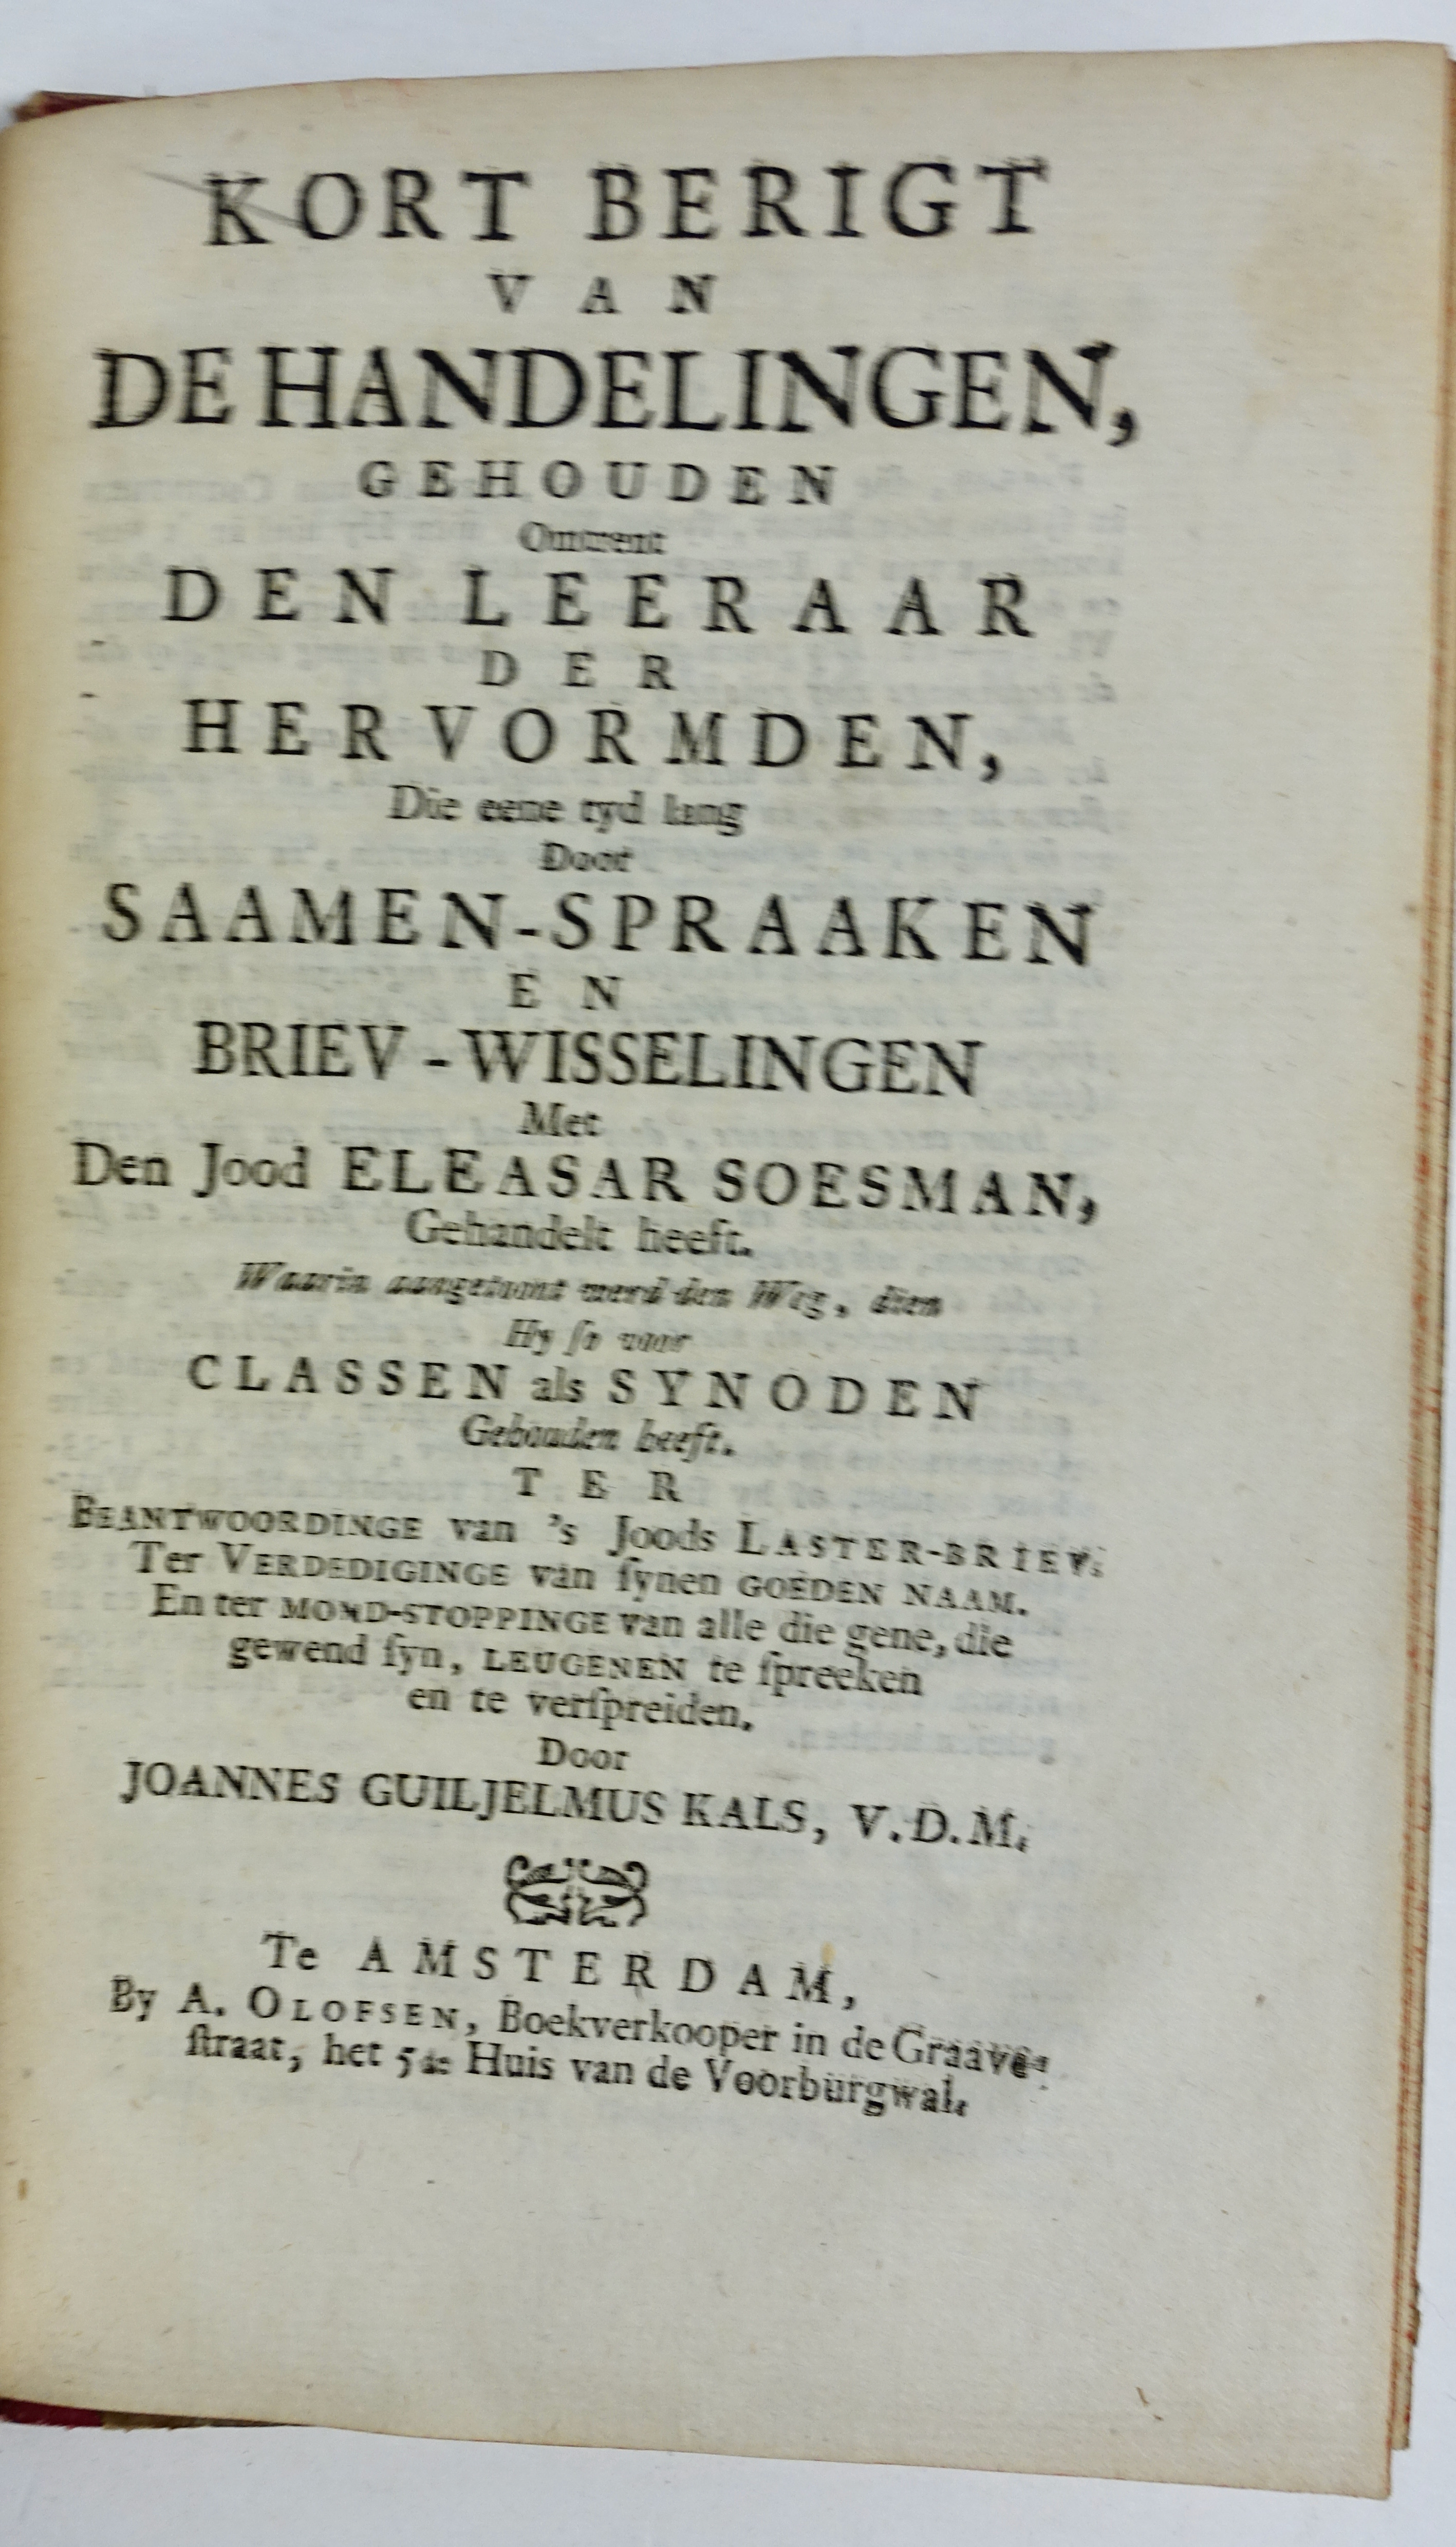 WAERE INTEREST, Het, van 't misleide Nederland. The Hague, L. Berkoske, 1742 - Image 2 of 2